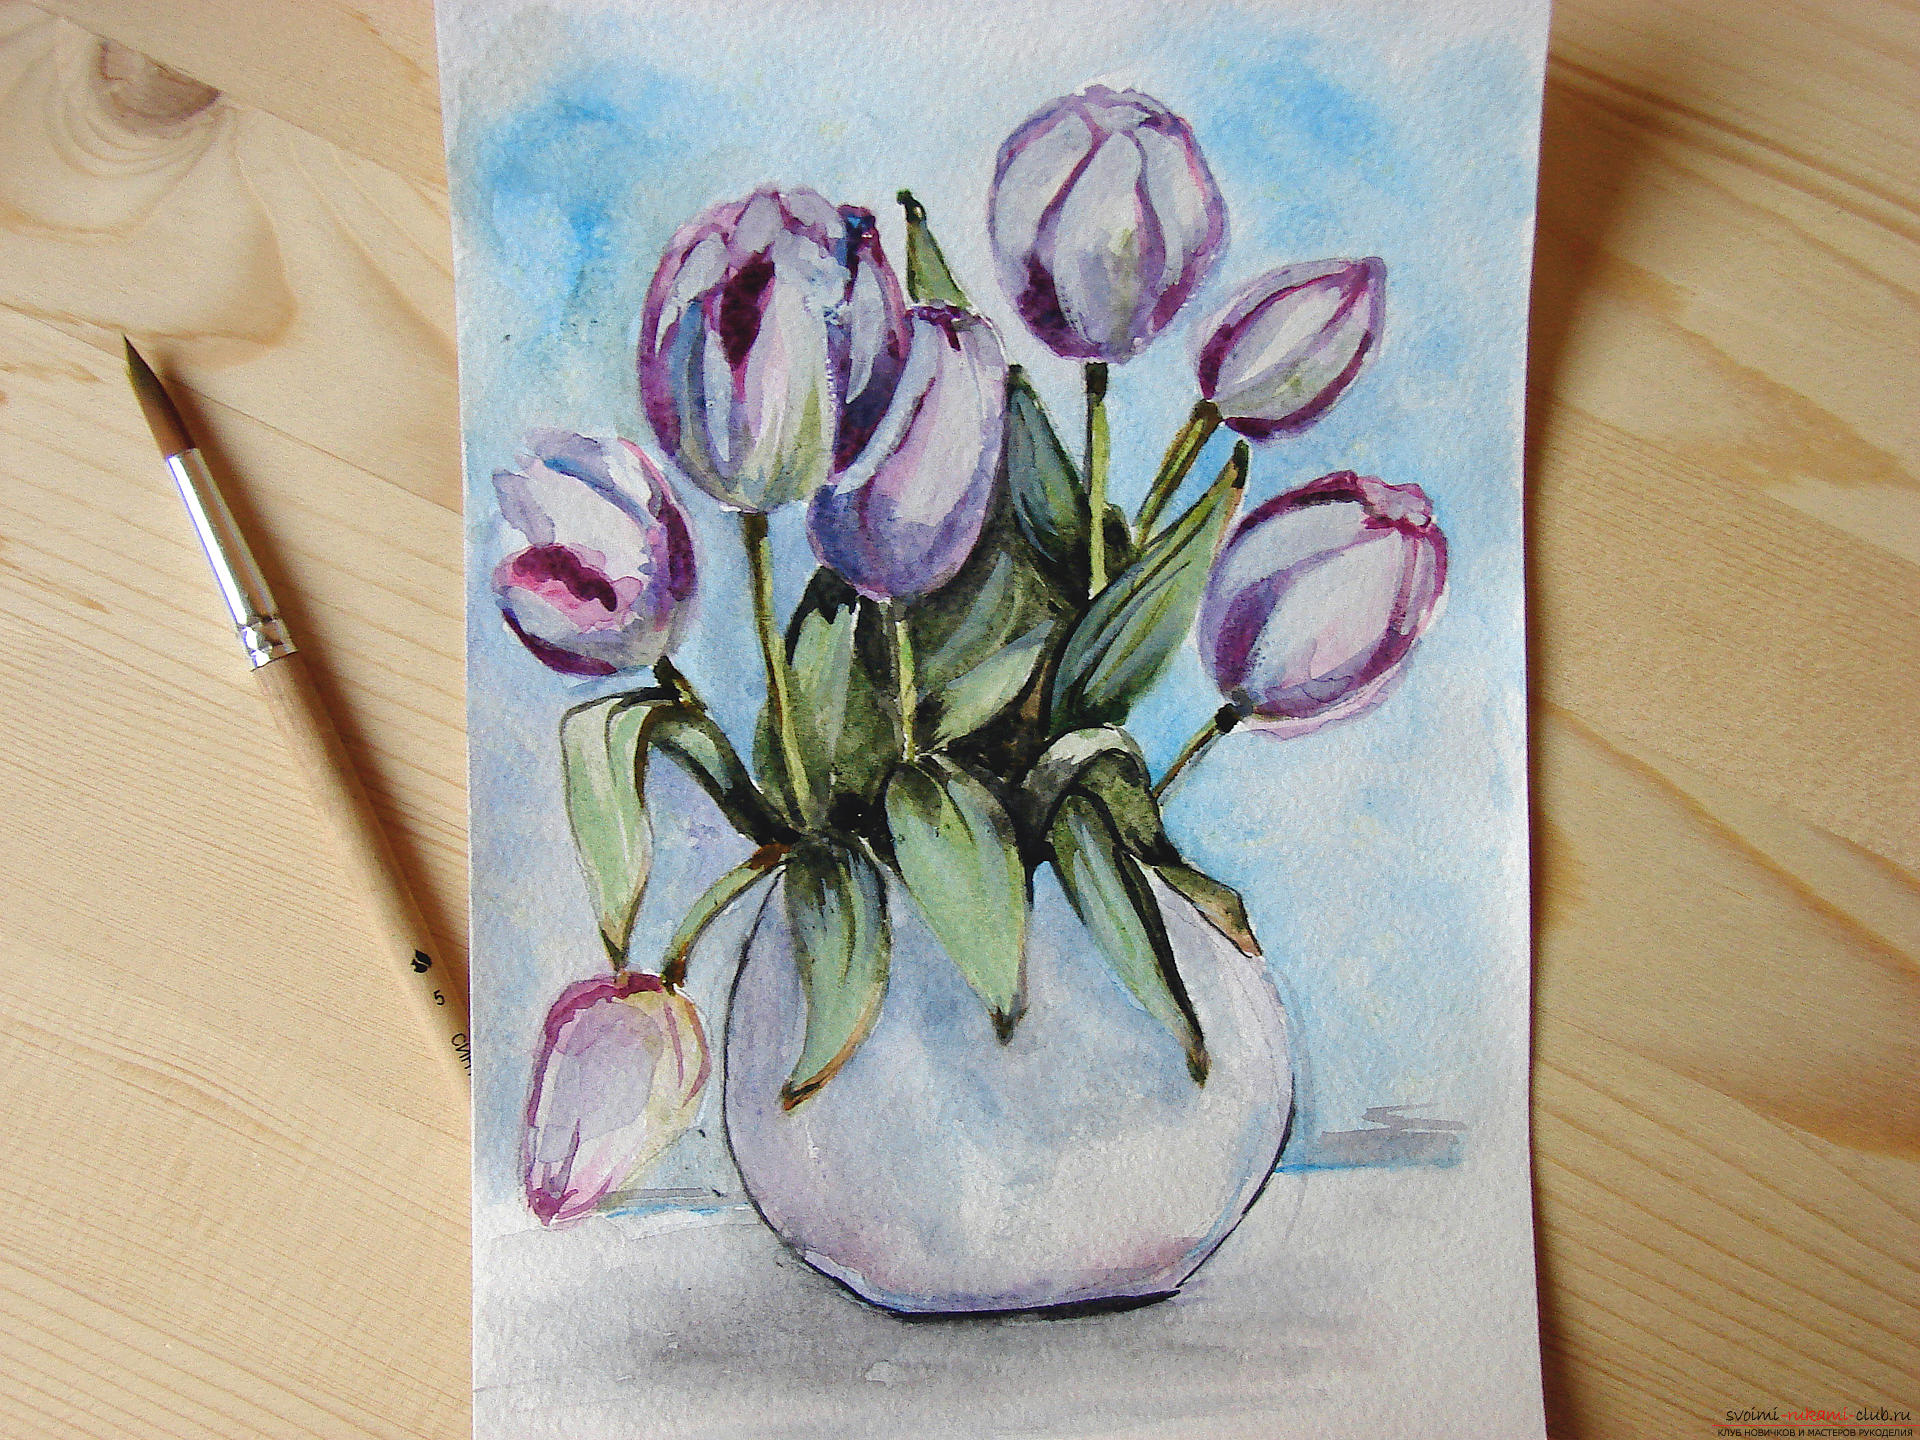 Мастер-класс по рисованию с фото научит как нарисовать цветы, подробно описав как рисуются тюльпаны поэтапно.. Фото №29